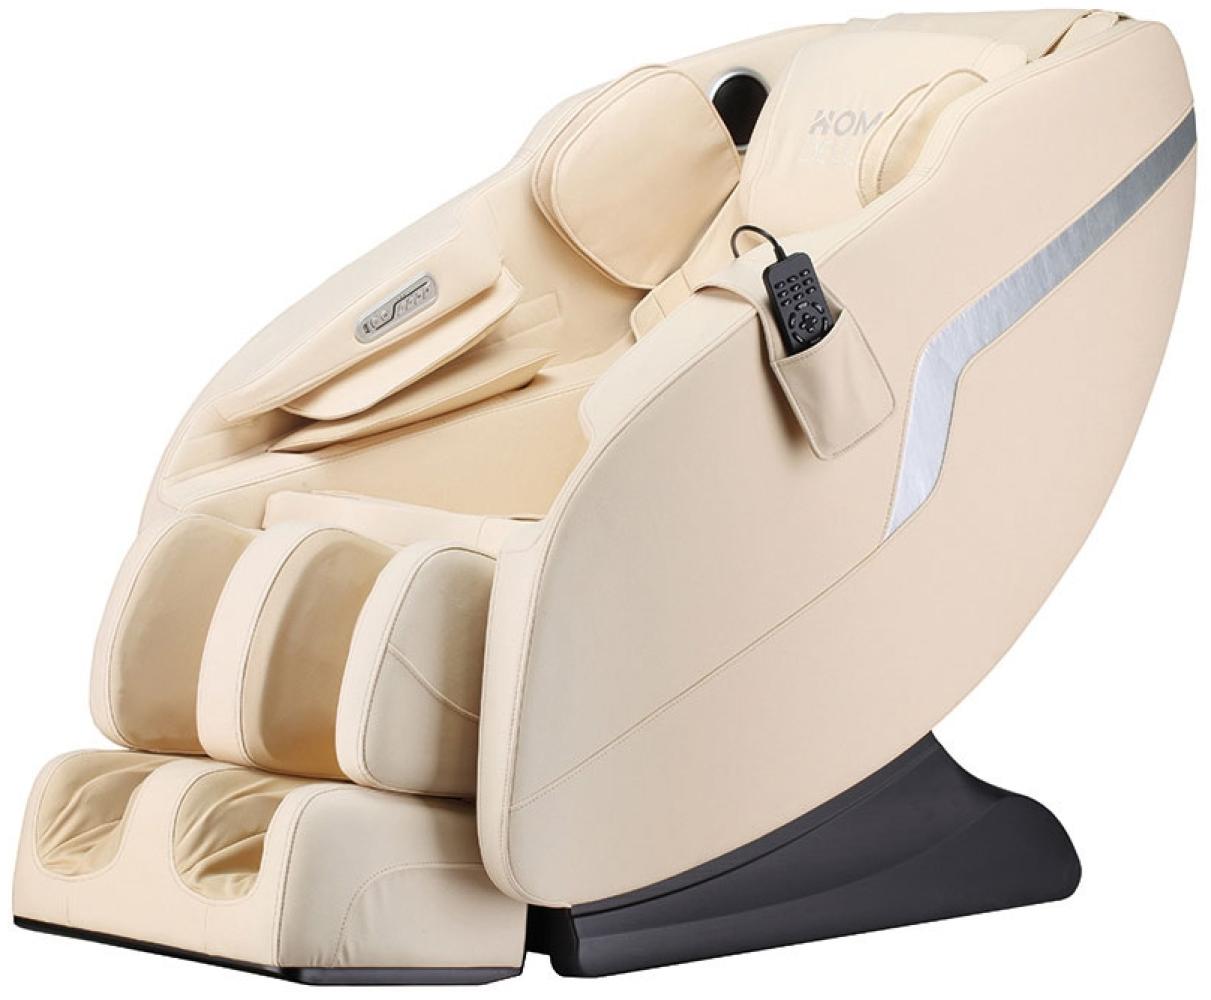 Home Deluxe 'Kelso' Massagesessel mit Heizfunktion und Bluetooth-Lautsprecher, beige Bild 1